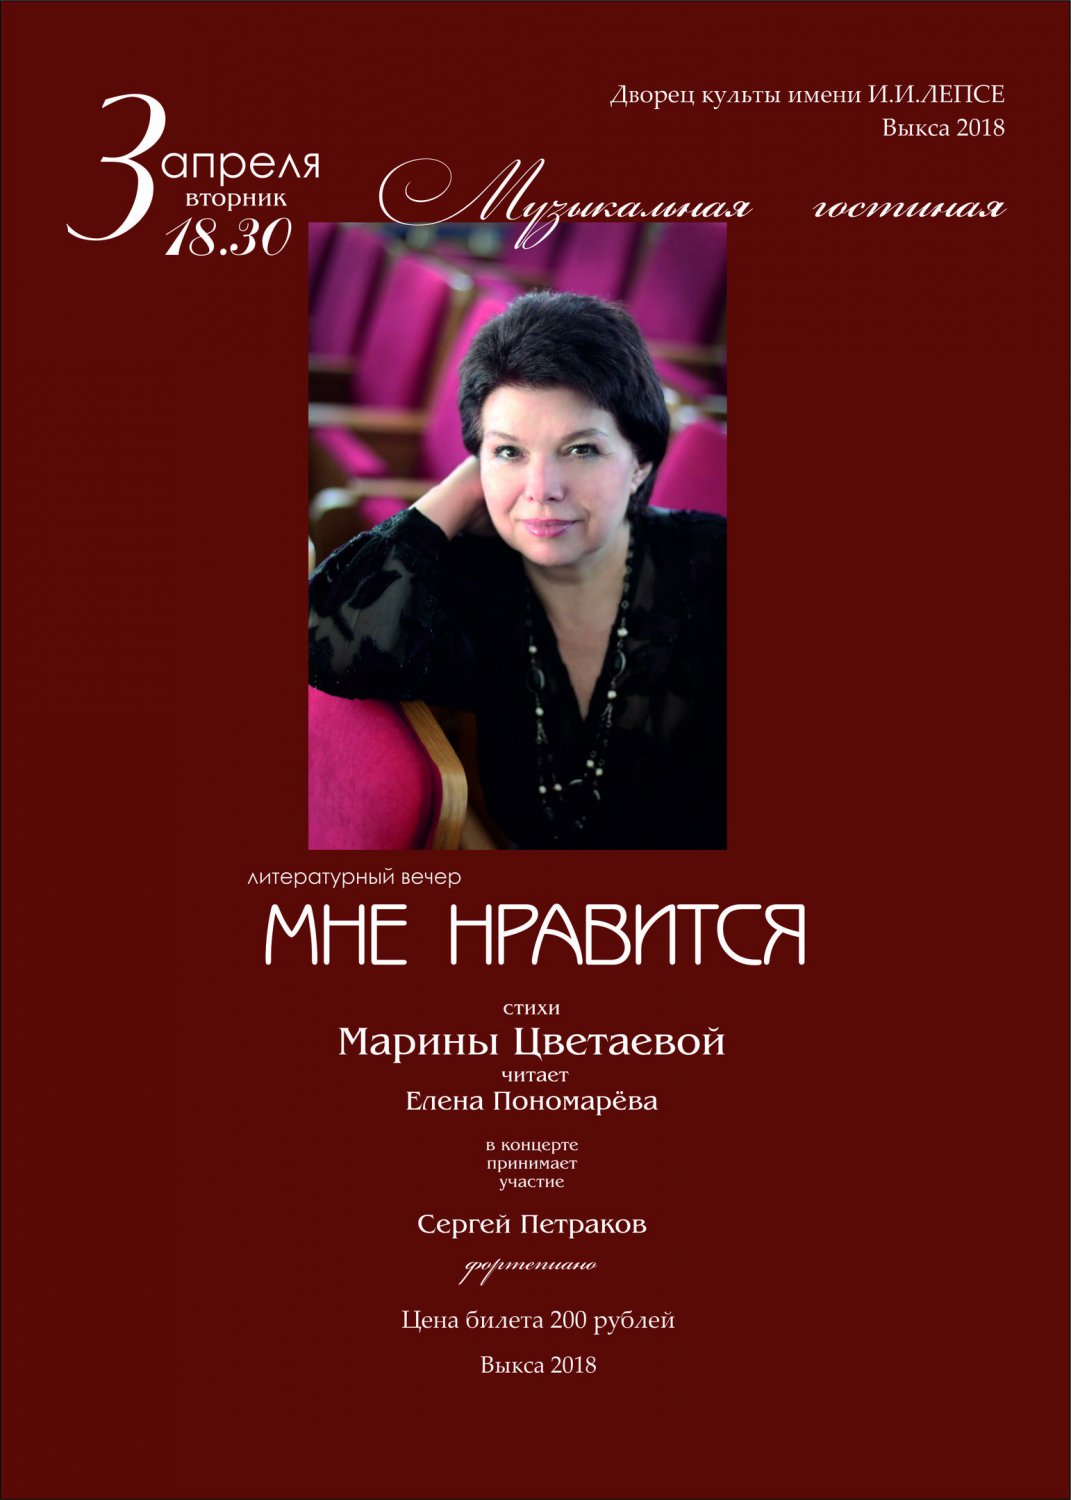 Музыкальная гостиная «Литературный вечер на стихи Марины Цветаевой»